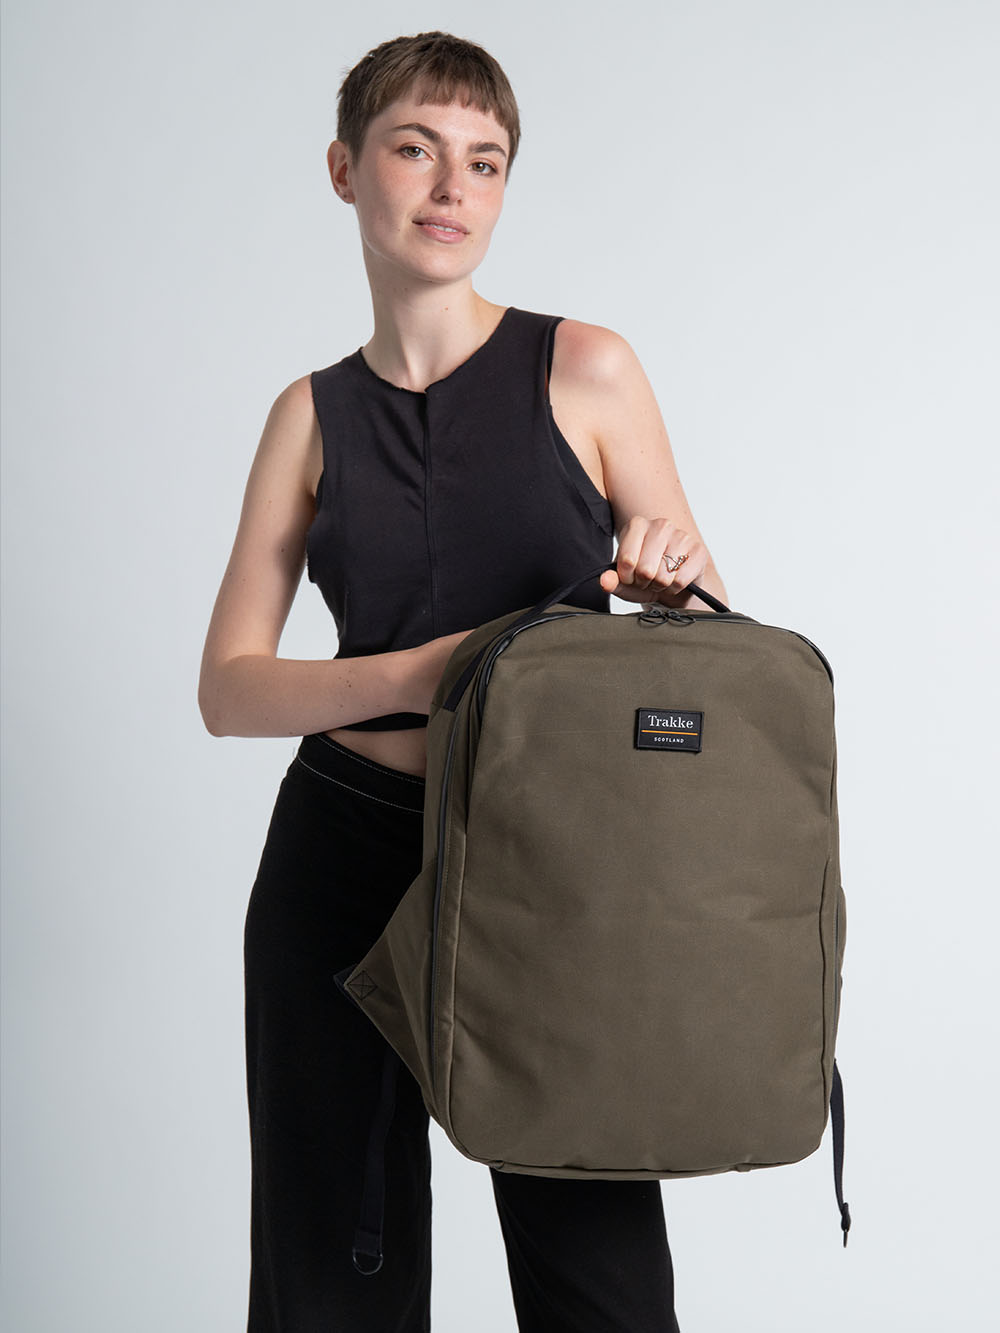 Trakke | Waxed Canvas Backpacks & Messenger Bags